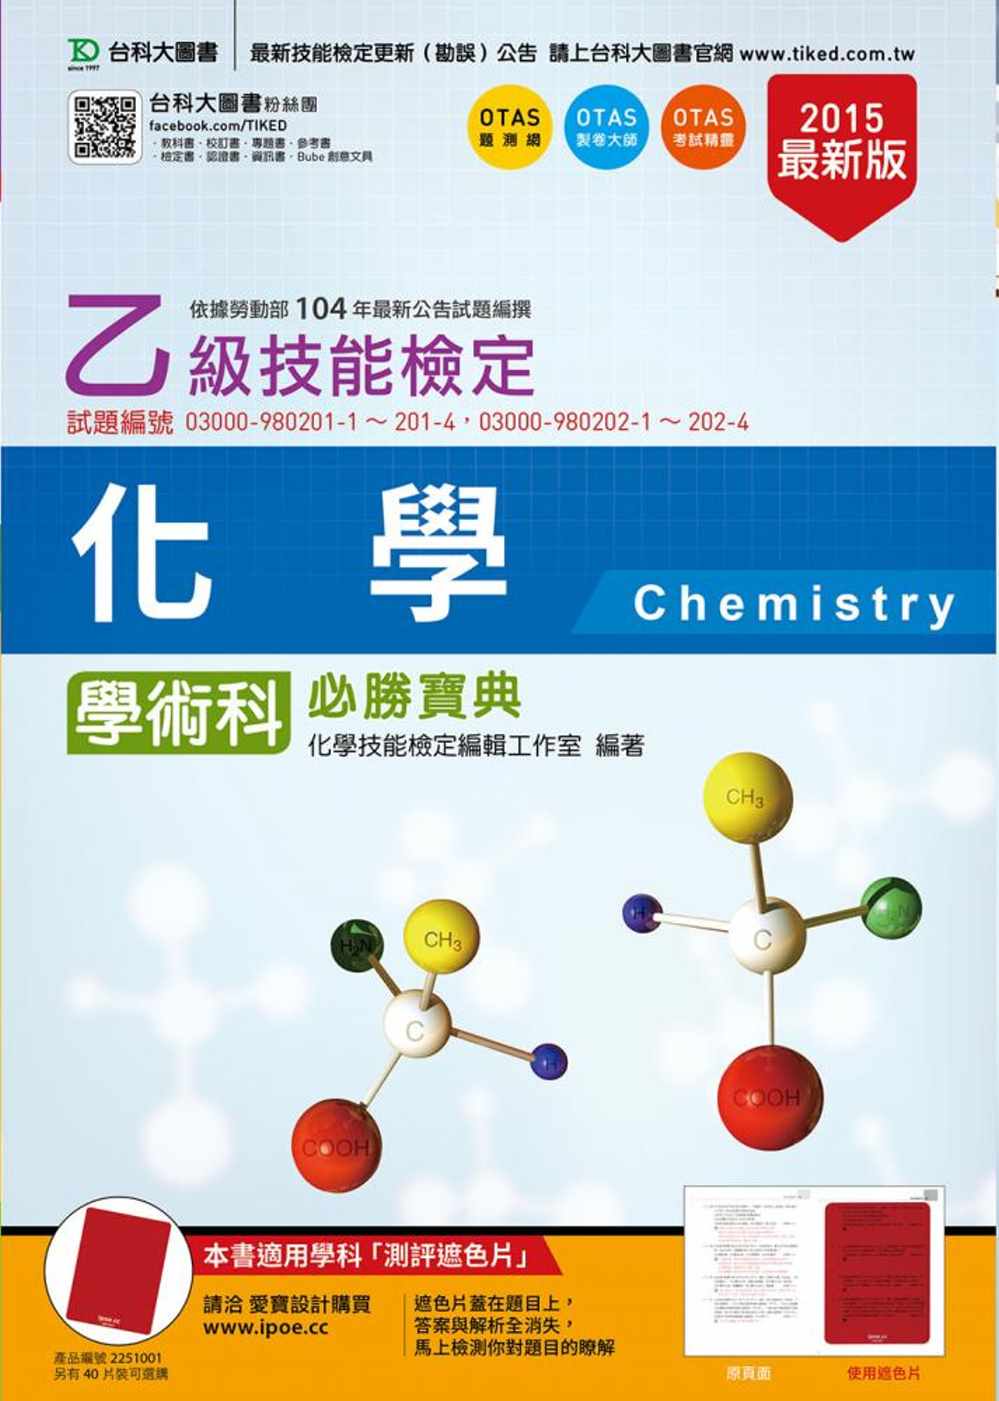 乙級化學學術科必勝寶典(2015年最新版)(附贈OTAS題測系統)